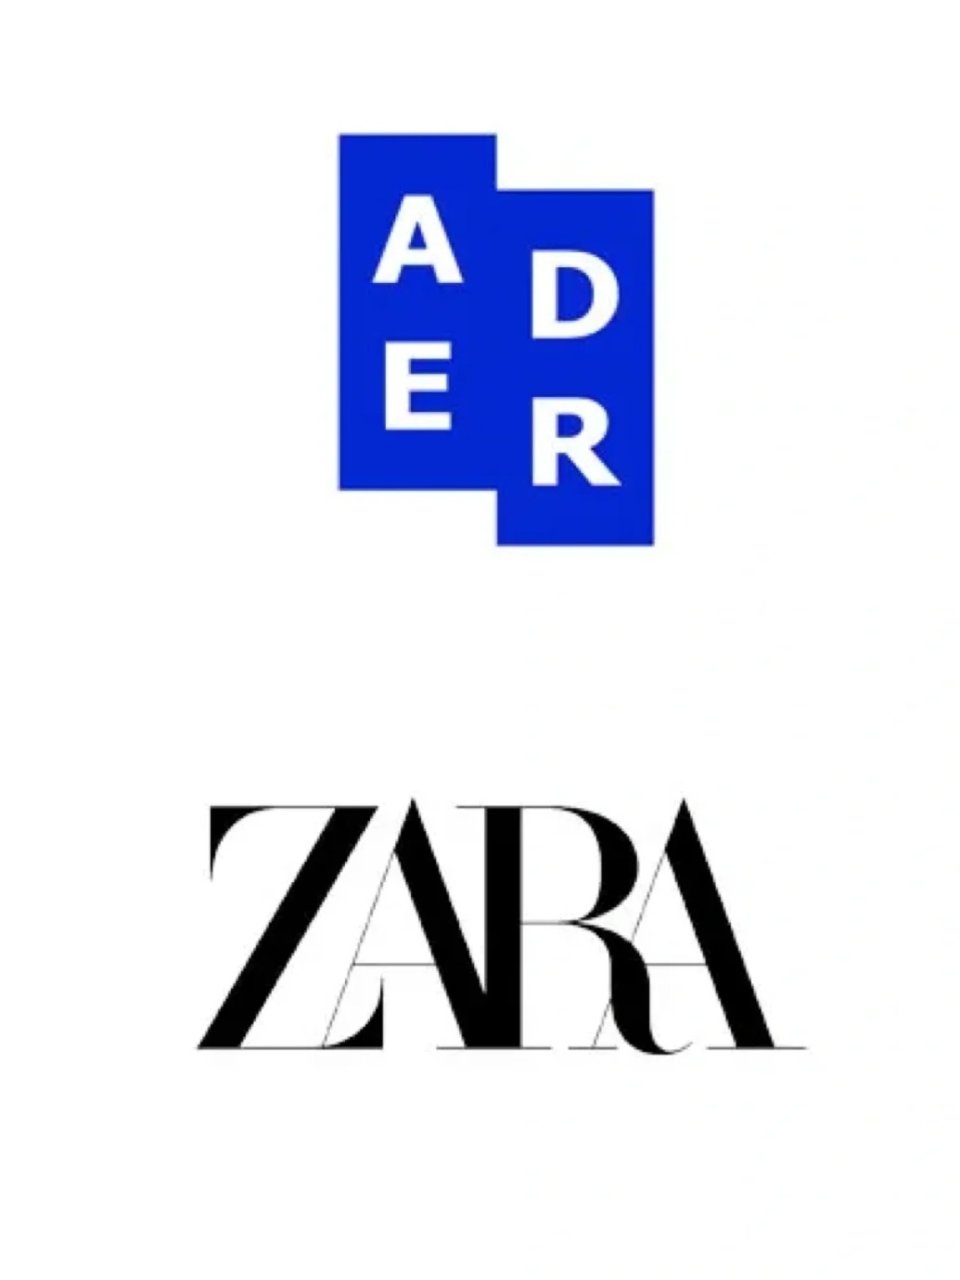 Zara,Ader Error